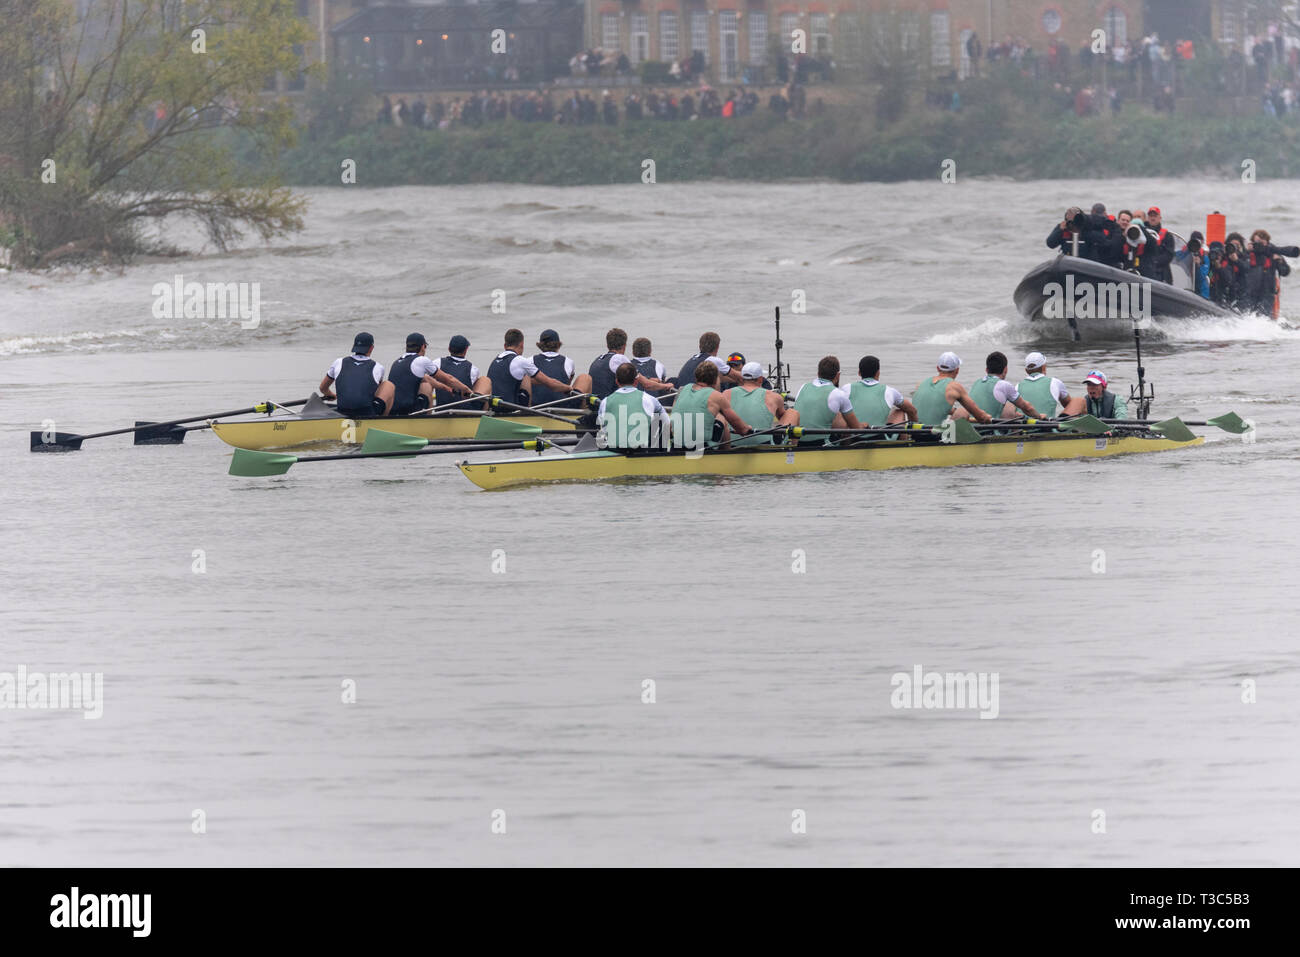 Oxford v Cambridge al 2019 University Boat Race racing verso la linea di finitura Mortlake, Londra, Regno Unito. Il boat race team di canottaggio sul fiume Tamigi Foto Stock